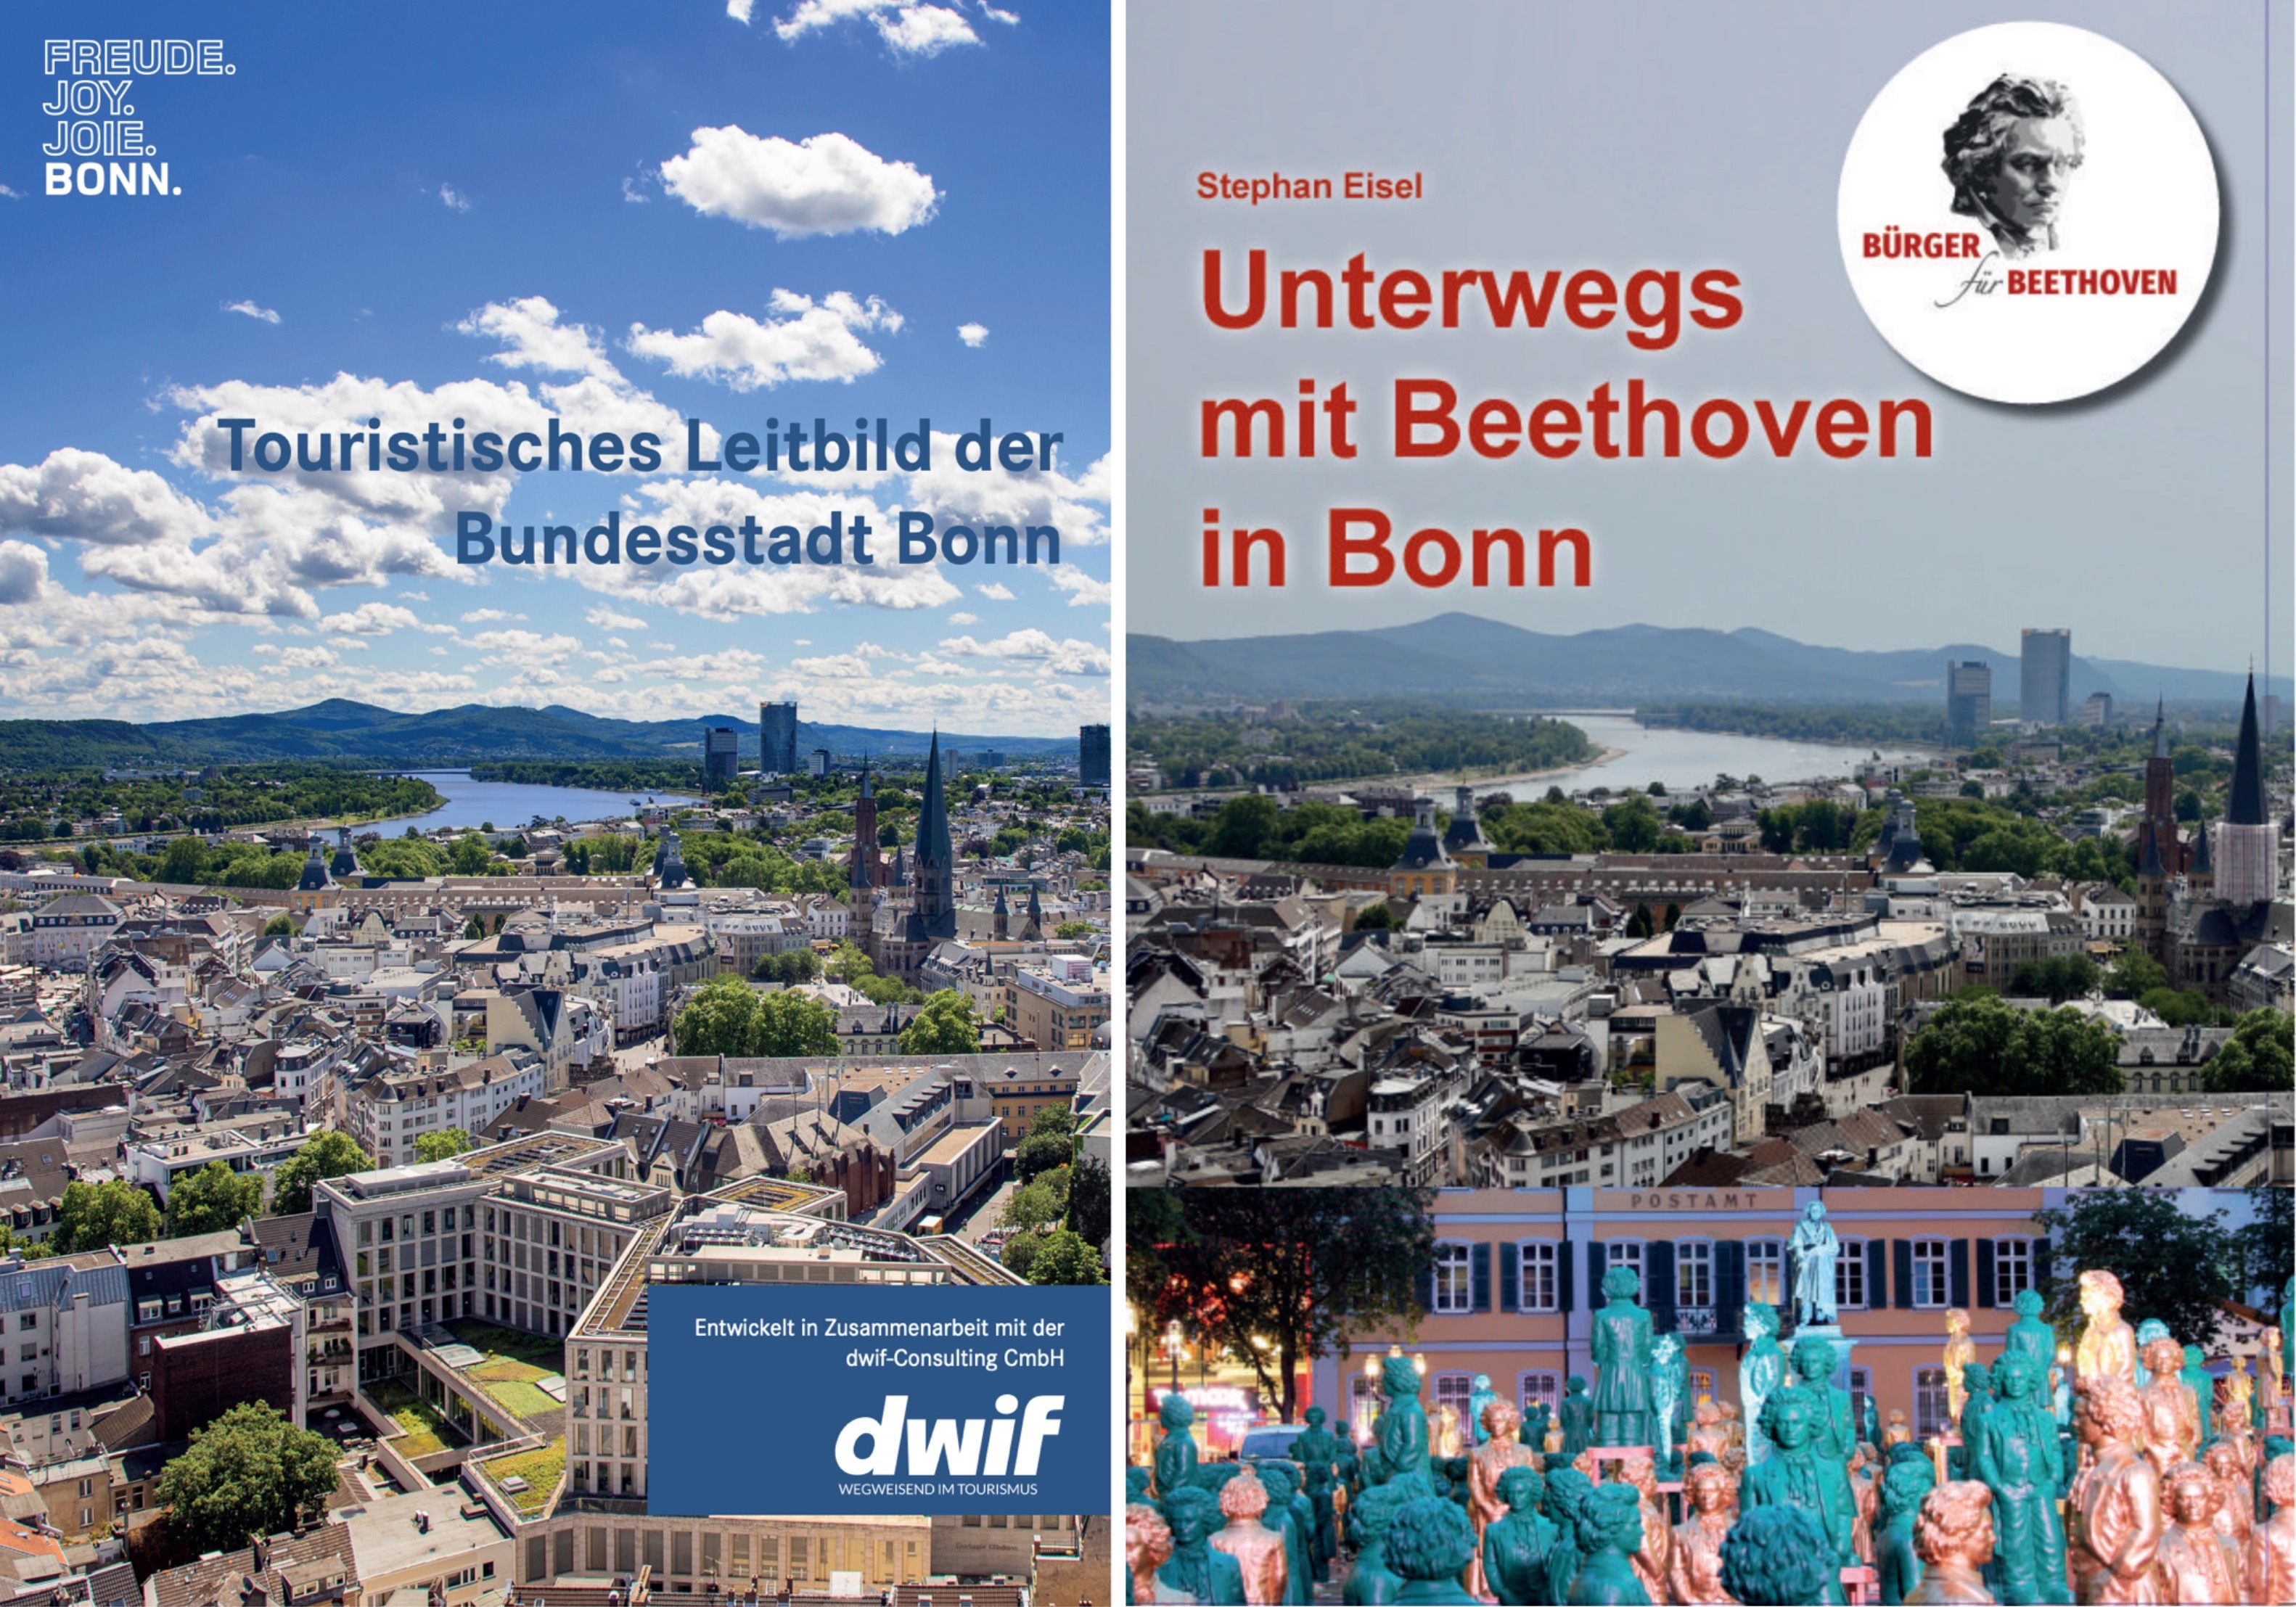 Wie sich die Bilder gleichen: Titelblatt des Tourismus-Gutachtens und der Broschüre der BÜRGER FÜR BEETHOVEN